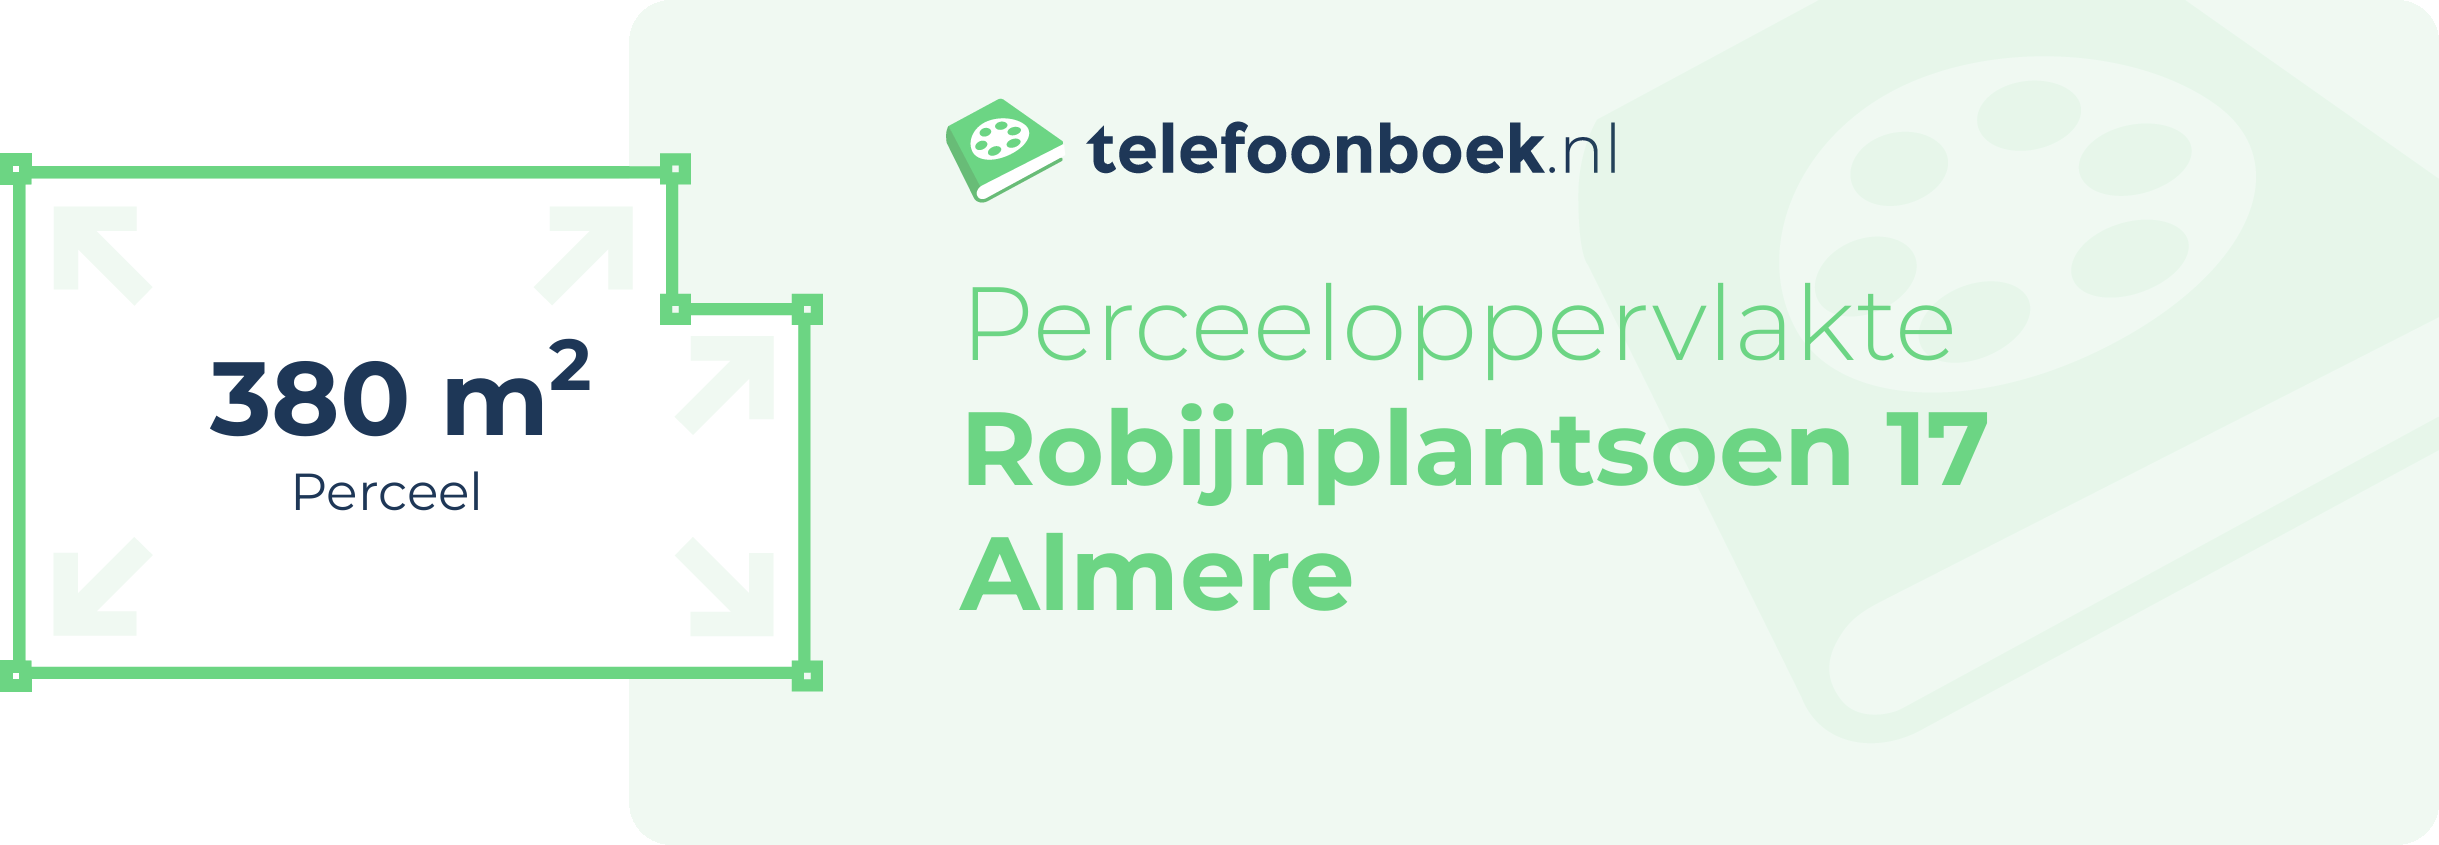 Perceeloppervlakte Robijnplantsoen 17 Almere